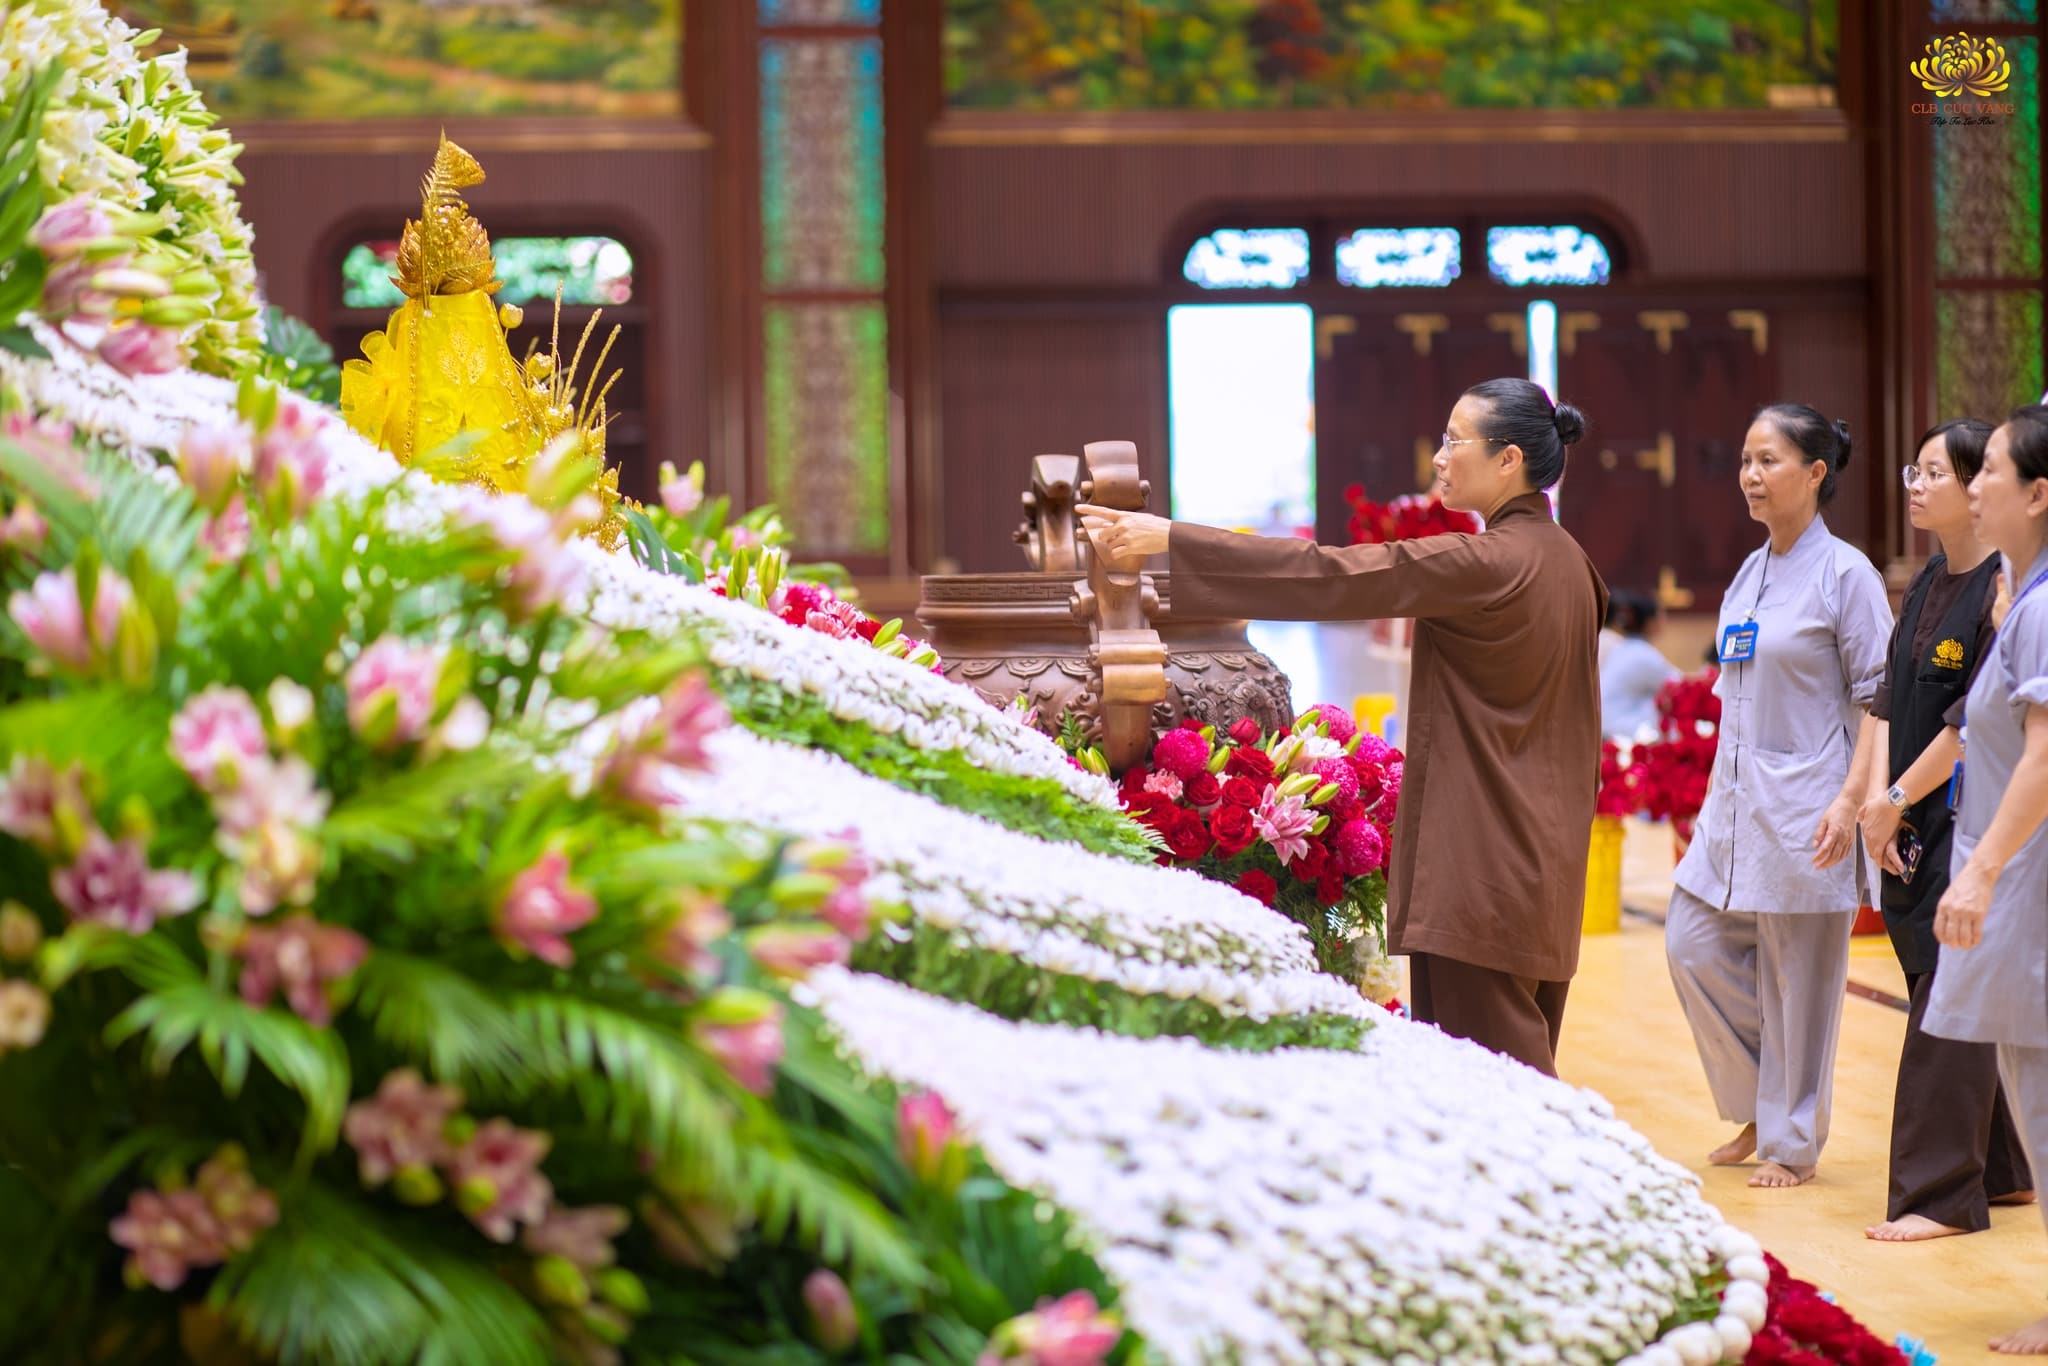 Đồng hành cùng các Phật tử trong công tác chuẩn bị cho Đại lễ Phật đản, Cô Phạm Thị Yến đã tới tận nơi để cùng kiểm tra và động viên các Phật tử